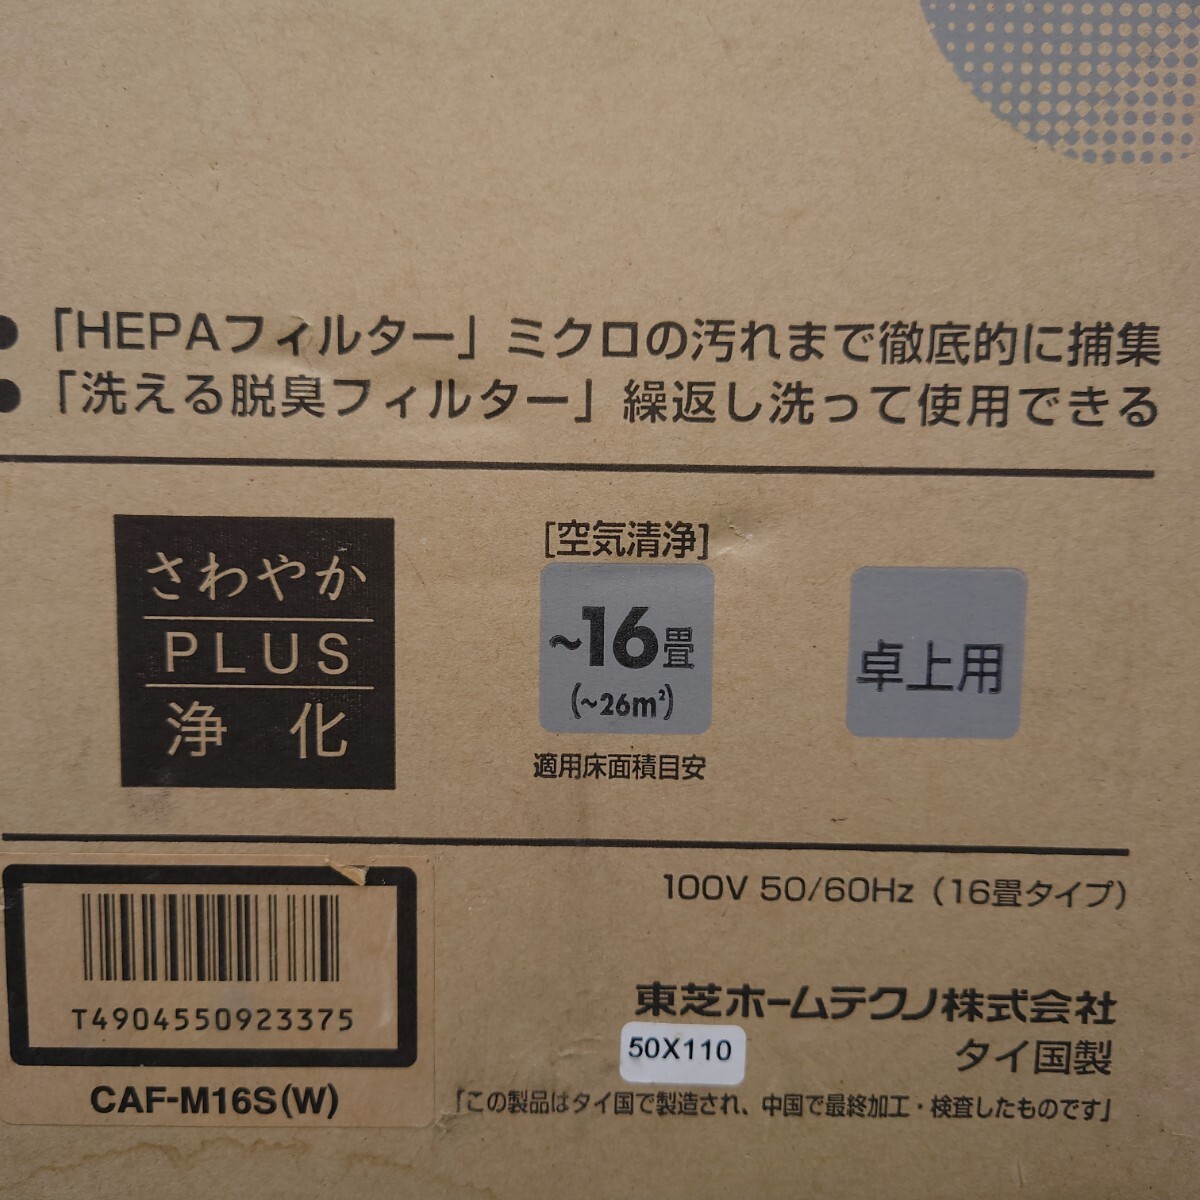 【未使用】 TOSHIBA 空気清浄機 CAF-M16S ホワイト 【現状渡し】_画像4